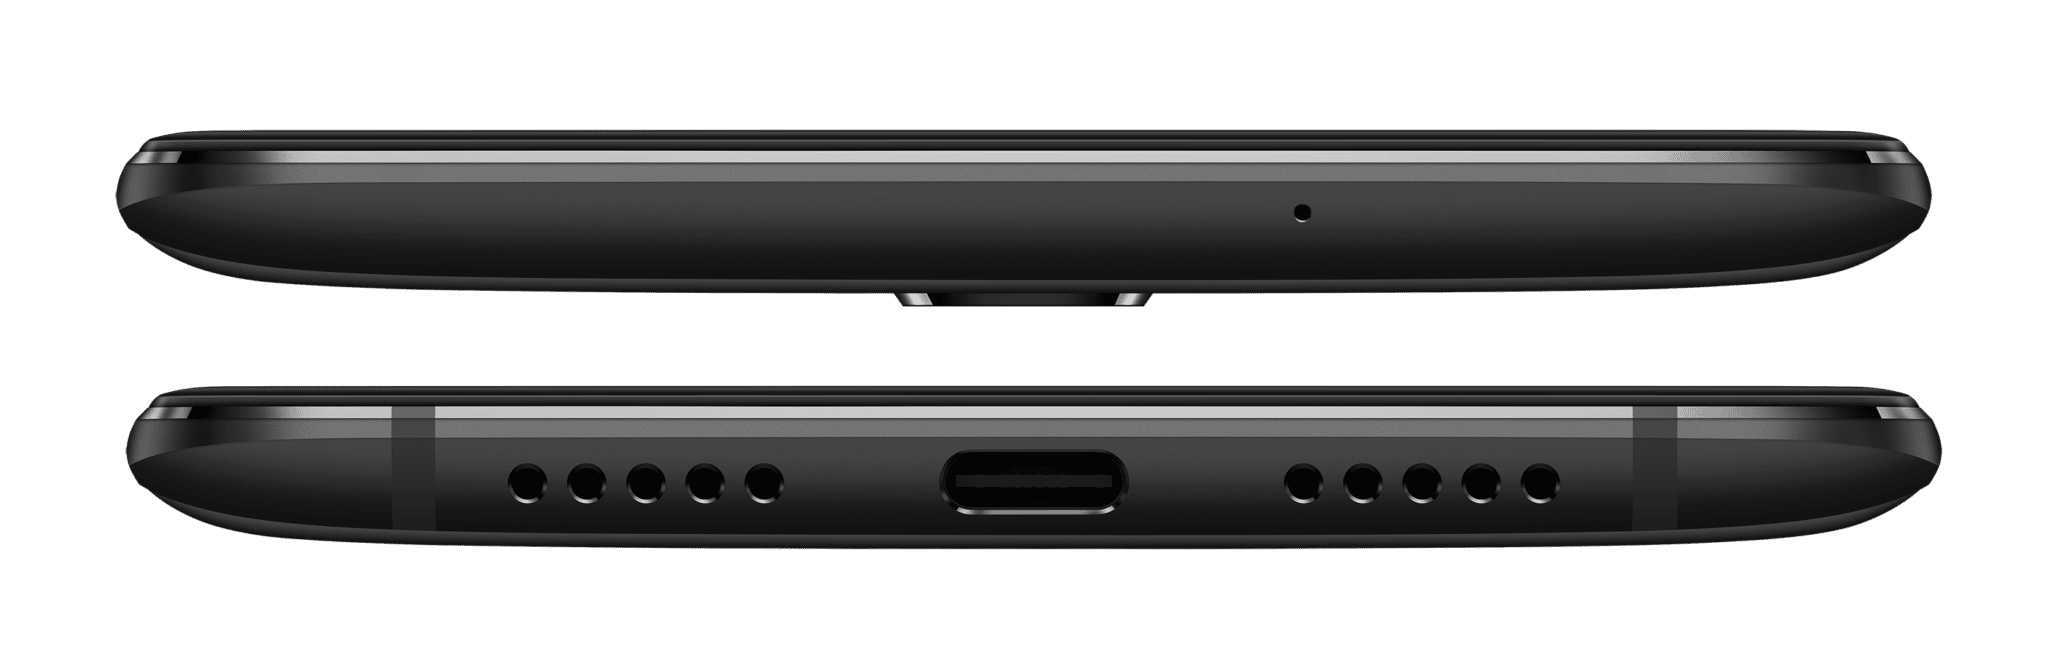 OnePlus 6T : un smartphone puissant et pas cher